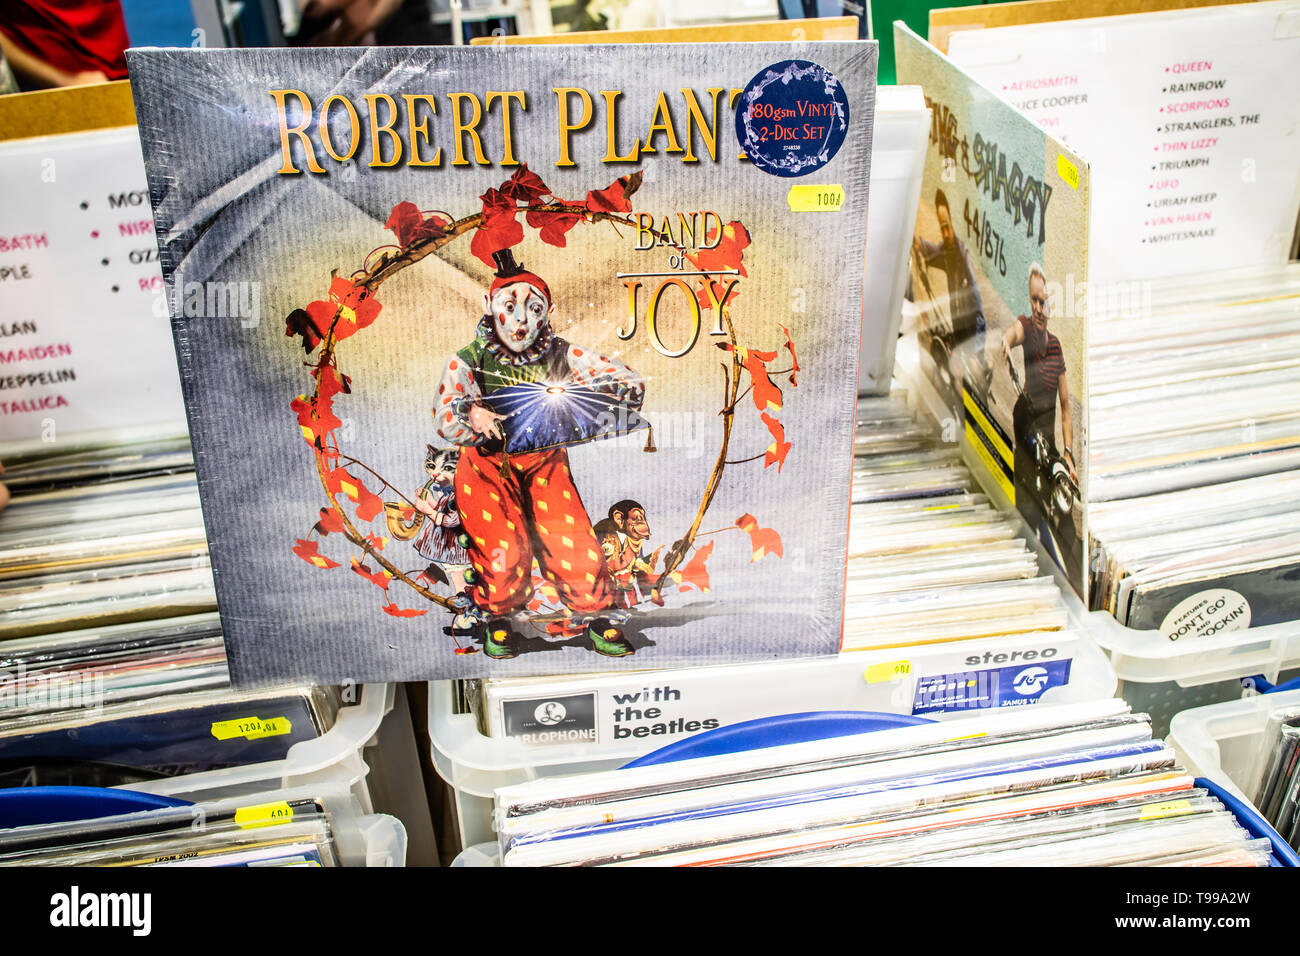 Nadarzyn, Pologne, mai 110, 2019 Robert Plant album vinyle sur l'affichage pour la vente, vinyle, CD, album, Rock, chanteur anglais, collection de vinyls Banque D'Images